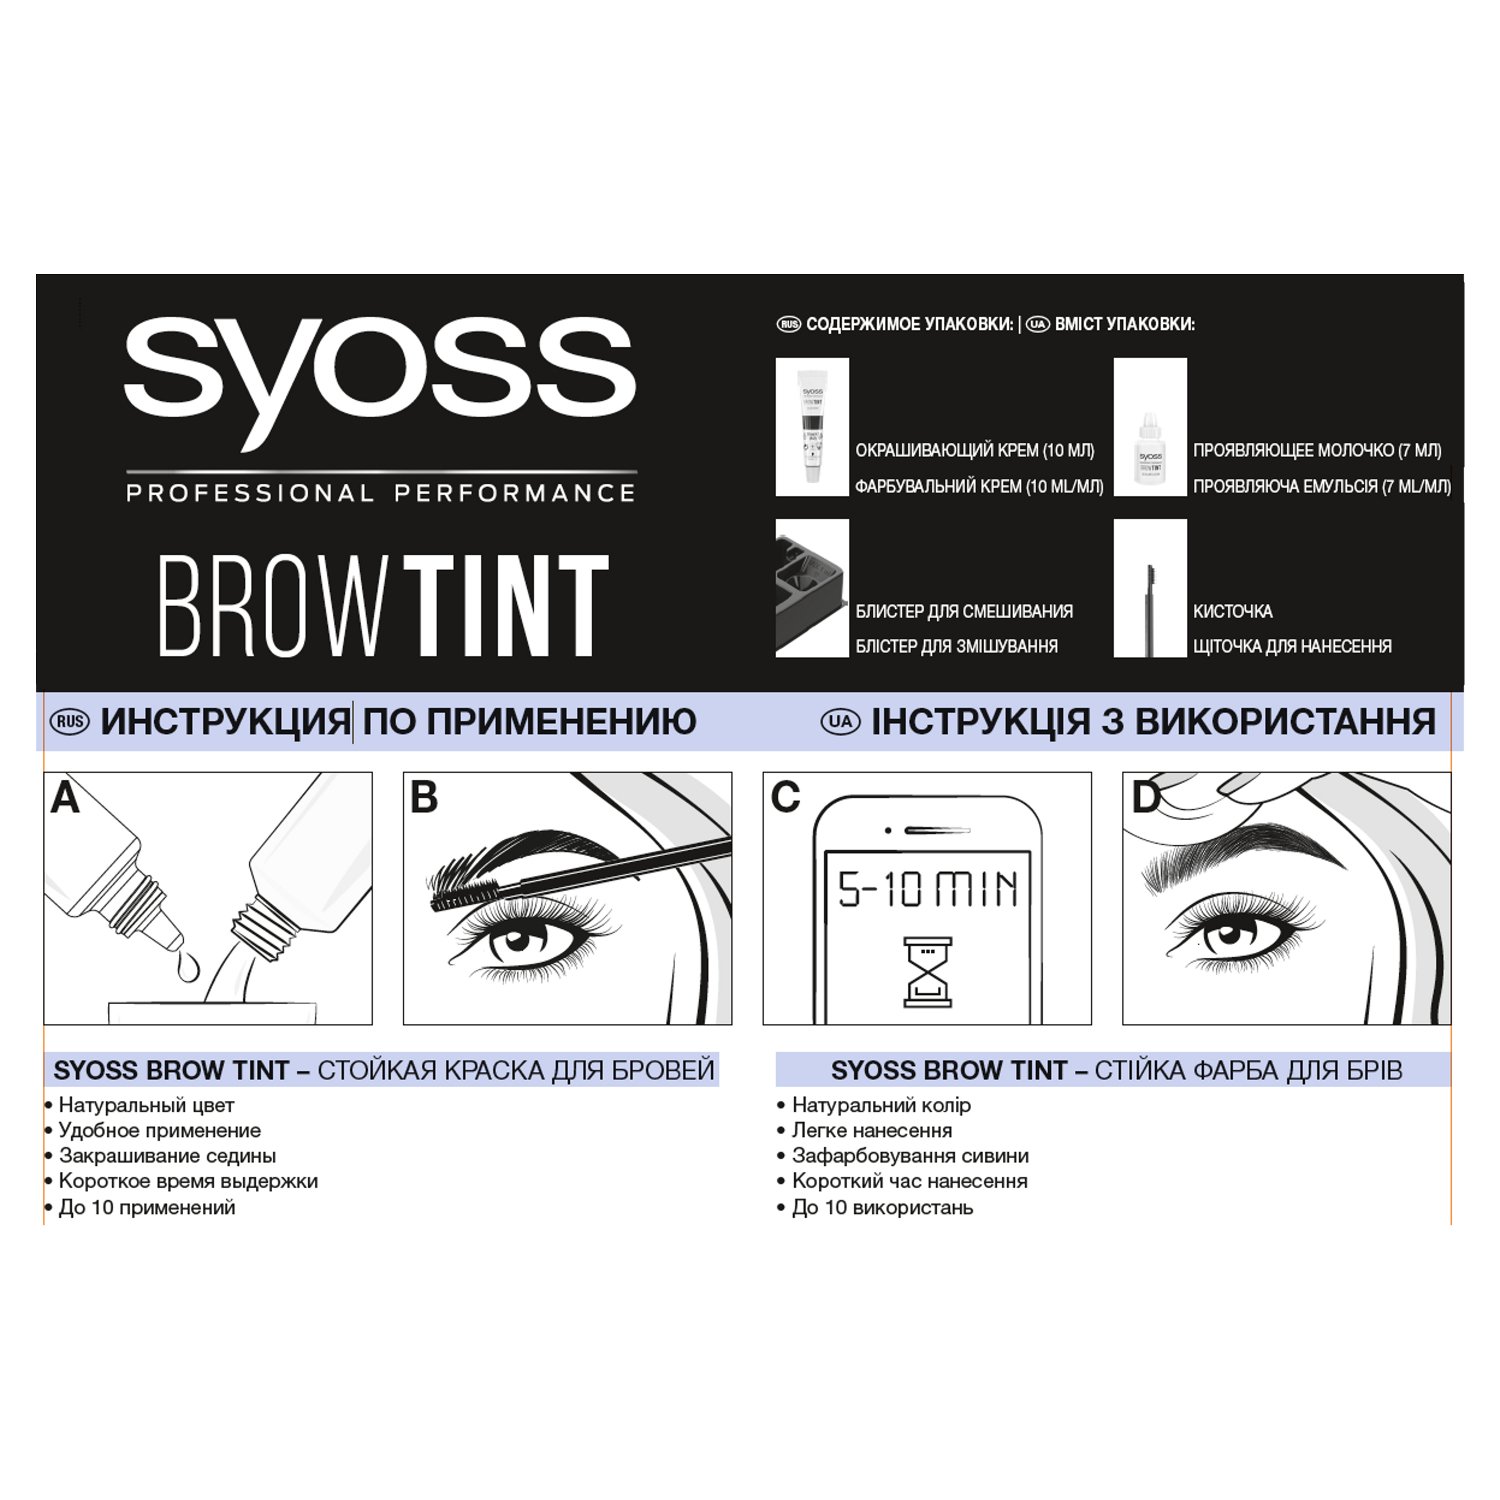 Стійка фарба для брів Syoss Brow Tint 3-1 графітова чорна 17 мл - фото 2